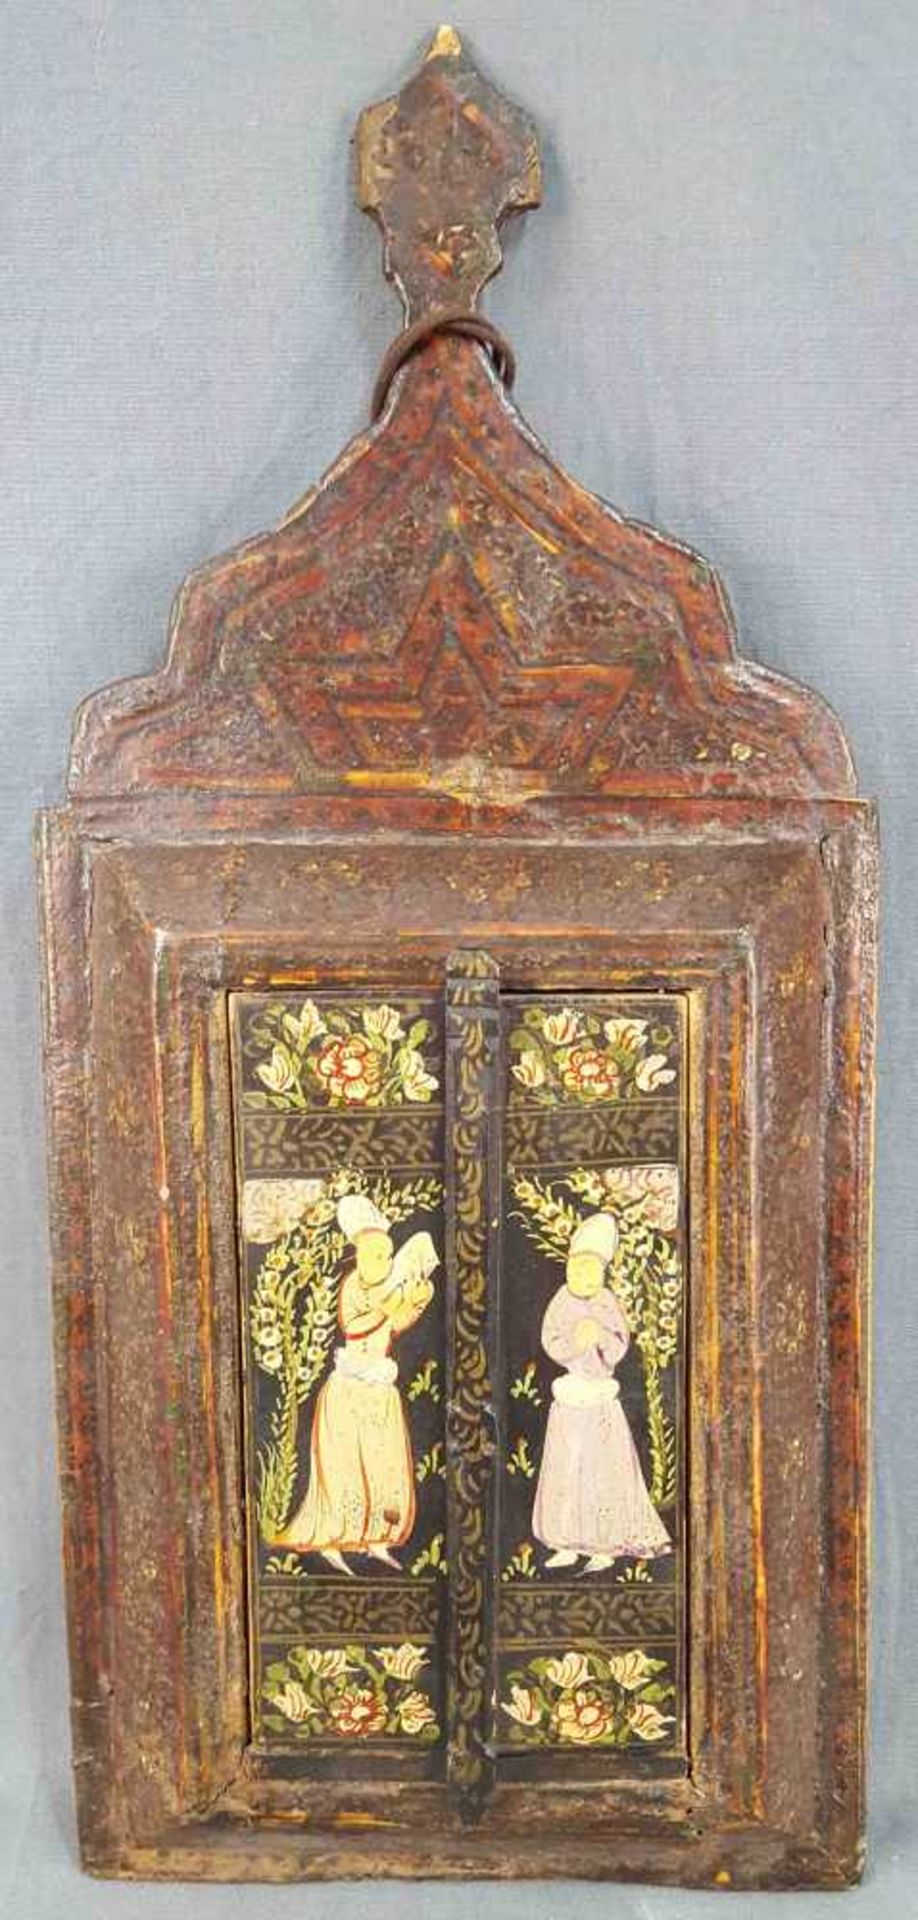 Persische Kaffeehaus-Malerei mit Spiegel im Quadjar Stil.47 cm x 21 cm. Malerei auf Holz.